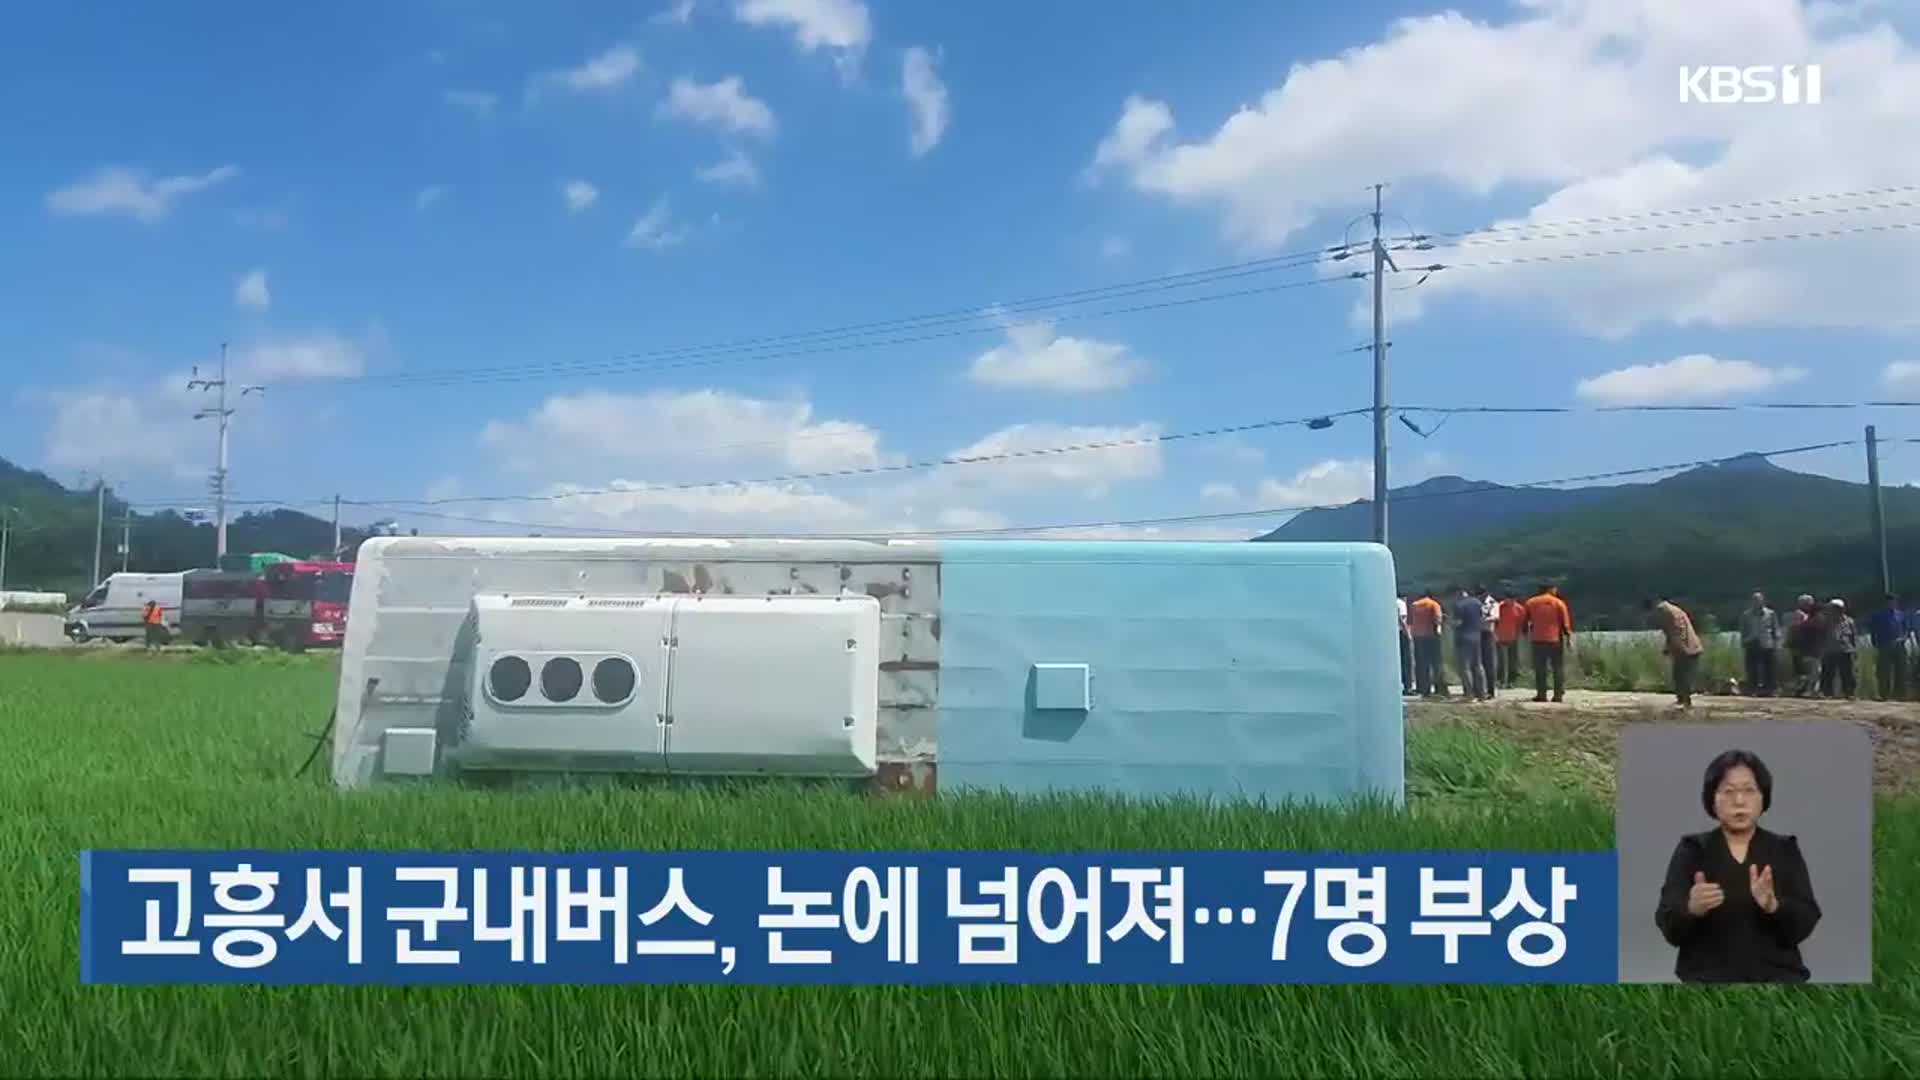 고흥서 군내버스, 논에 넘어져…7명 부상